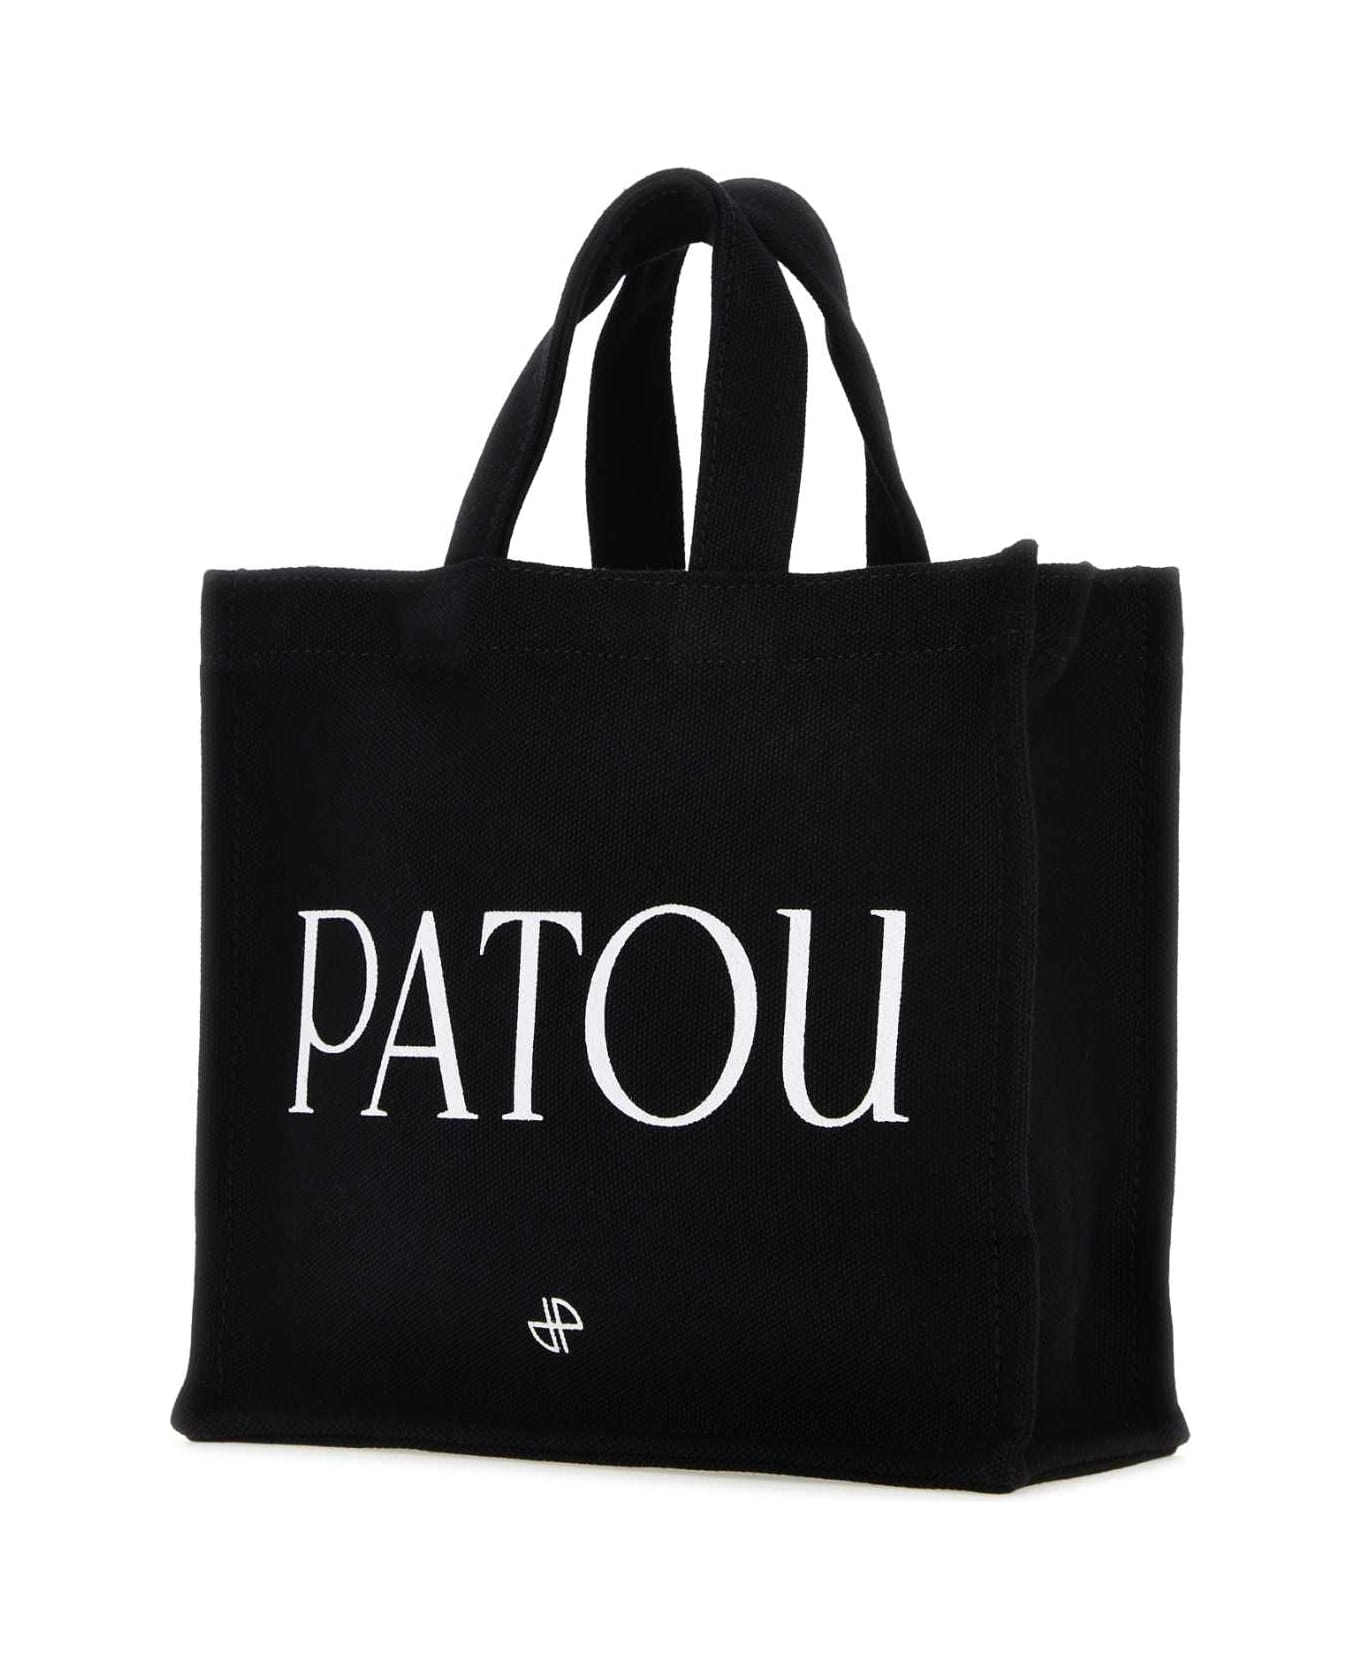 Patou Black Cotton Shopping Bag - 999B